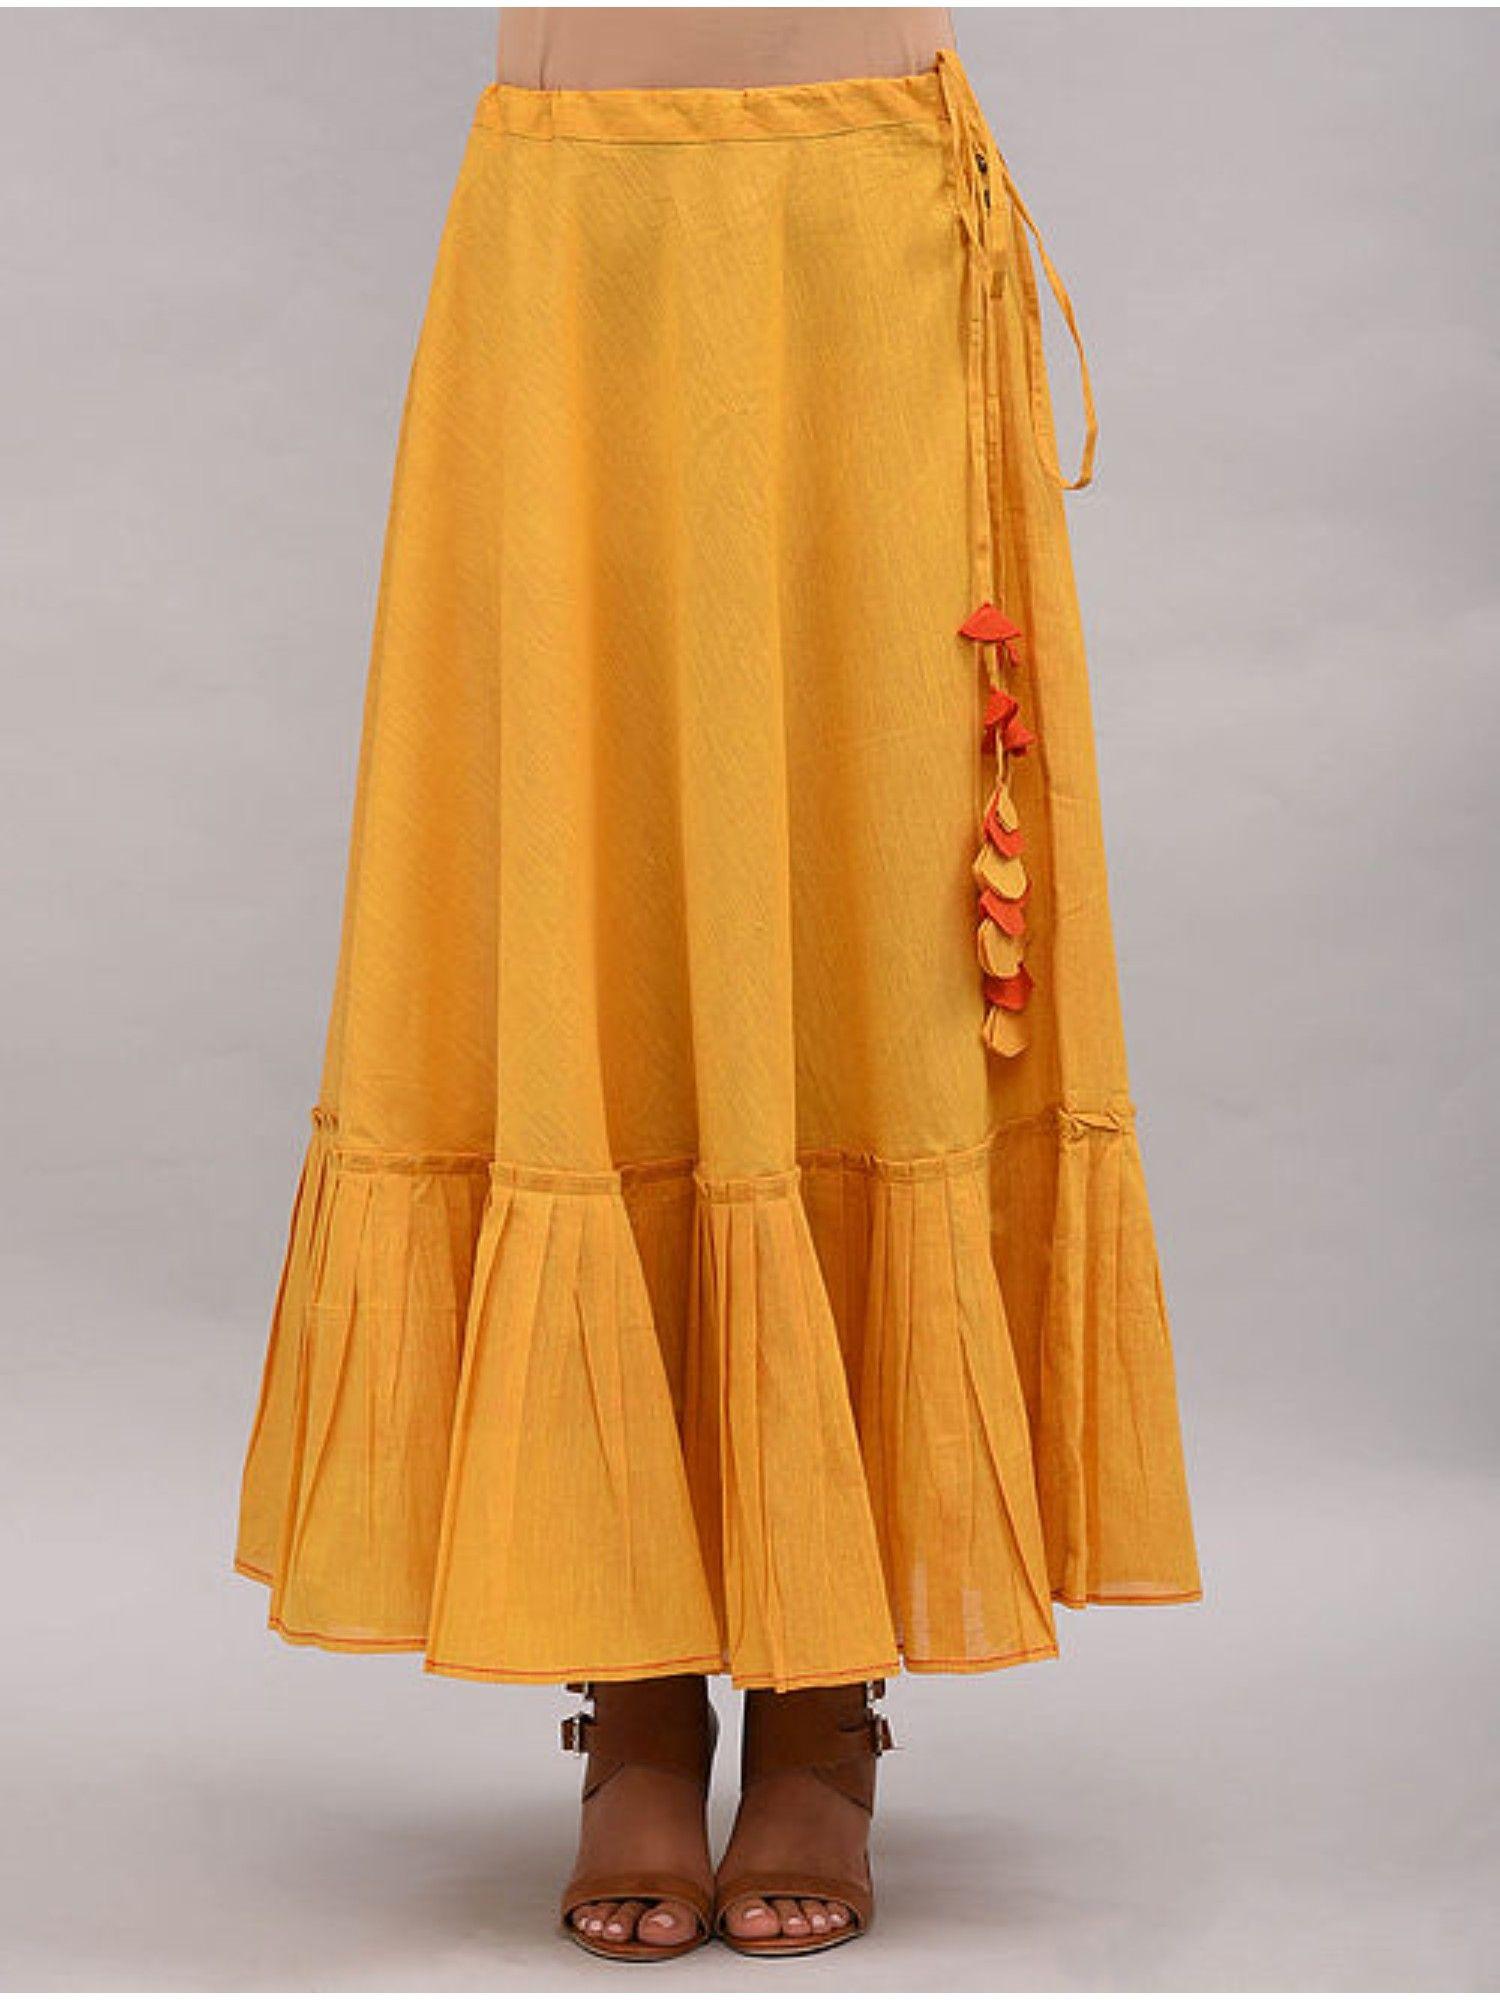 yellow cotton skirt